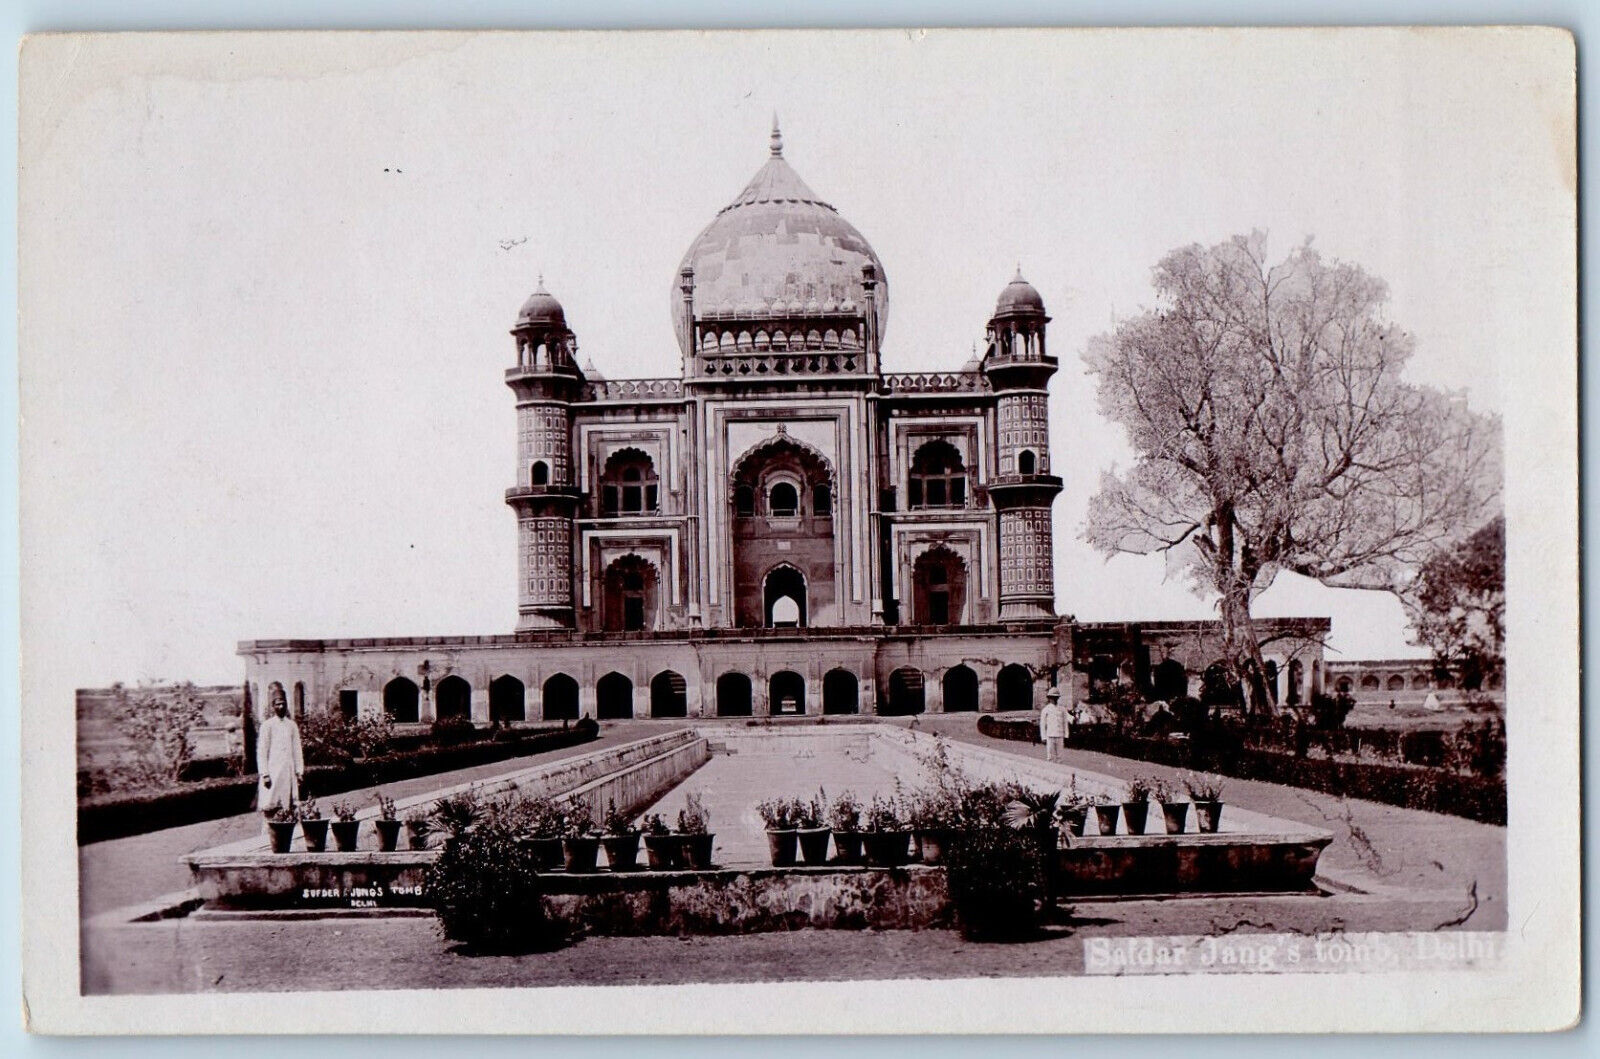 Delhi India Postcard Safdar Jang's Tomb Indian Building c1910 RPPC Photo